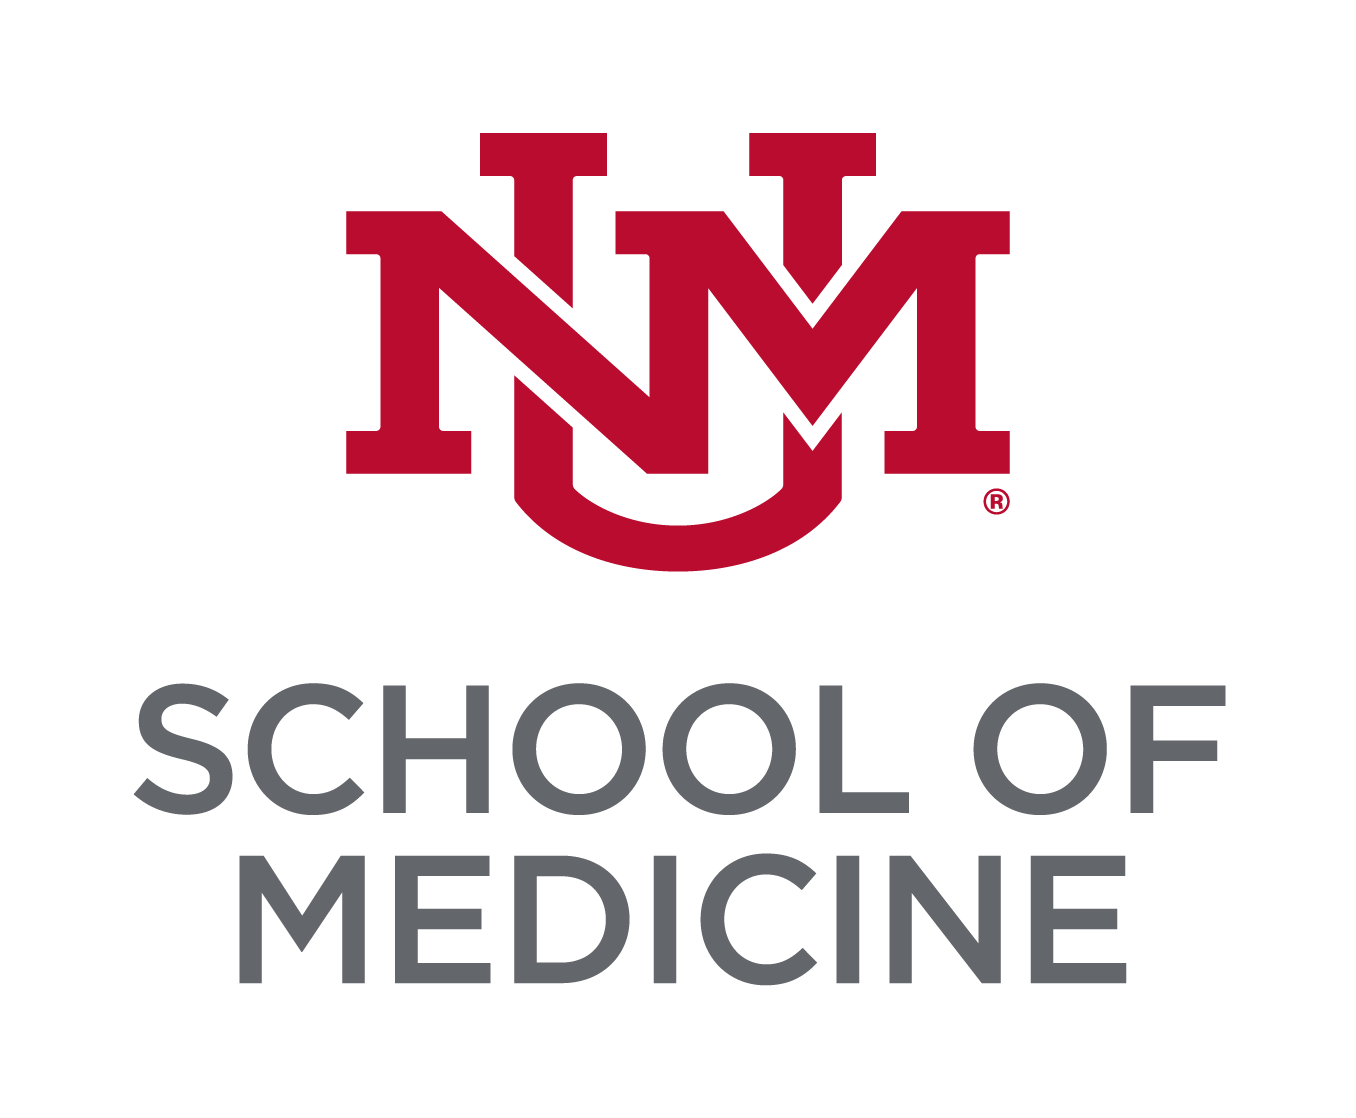 El monograma rojo cereza del equipo universitario de la UNM apilado sobre el título Lobo Gray "Escuela de Medicina".